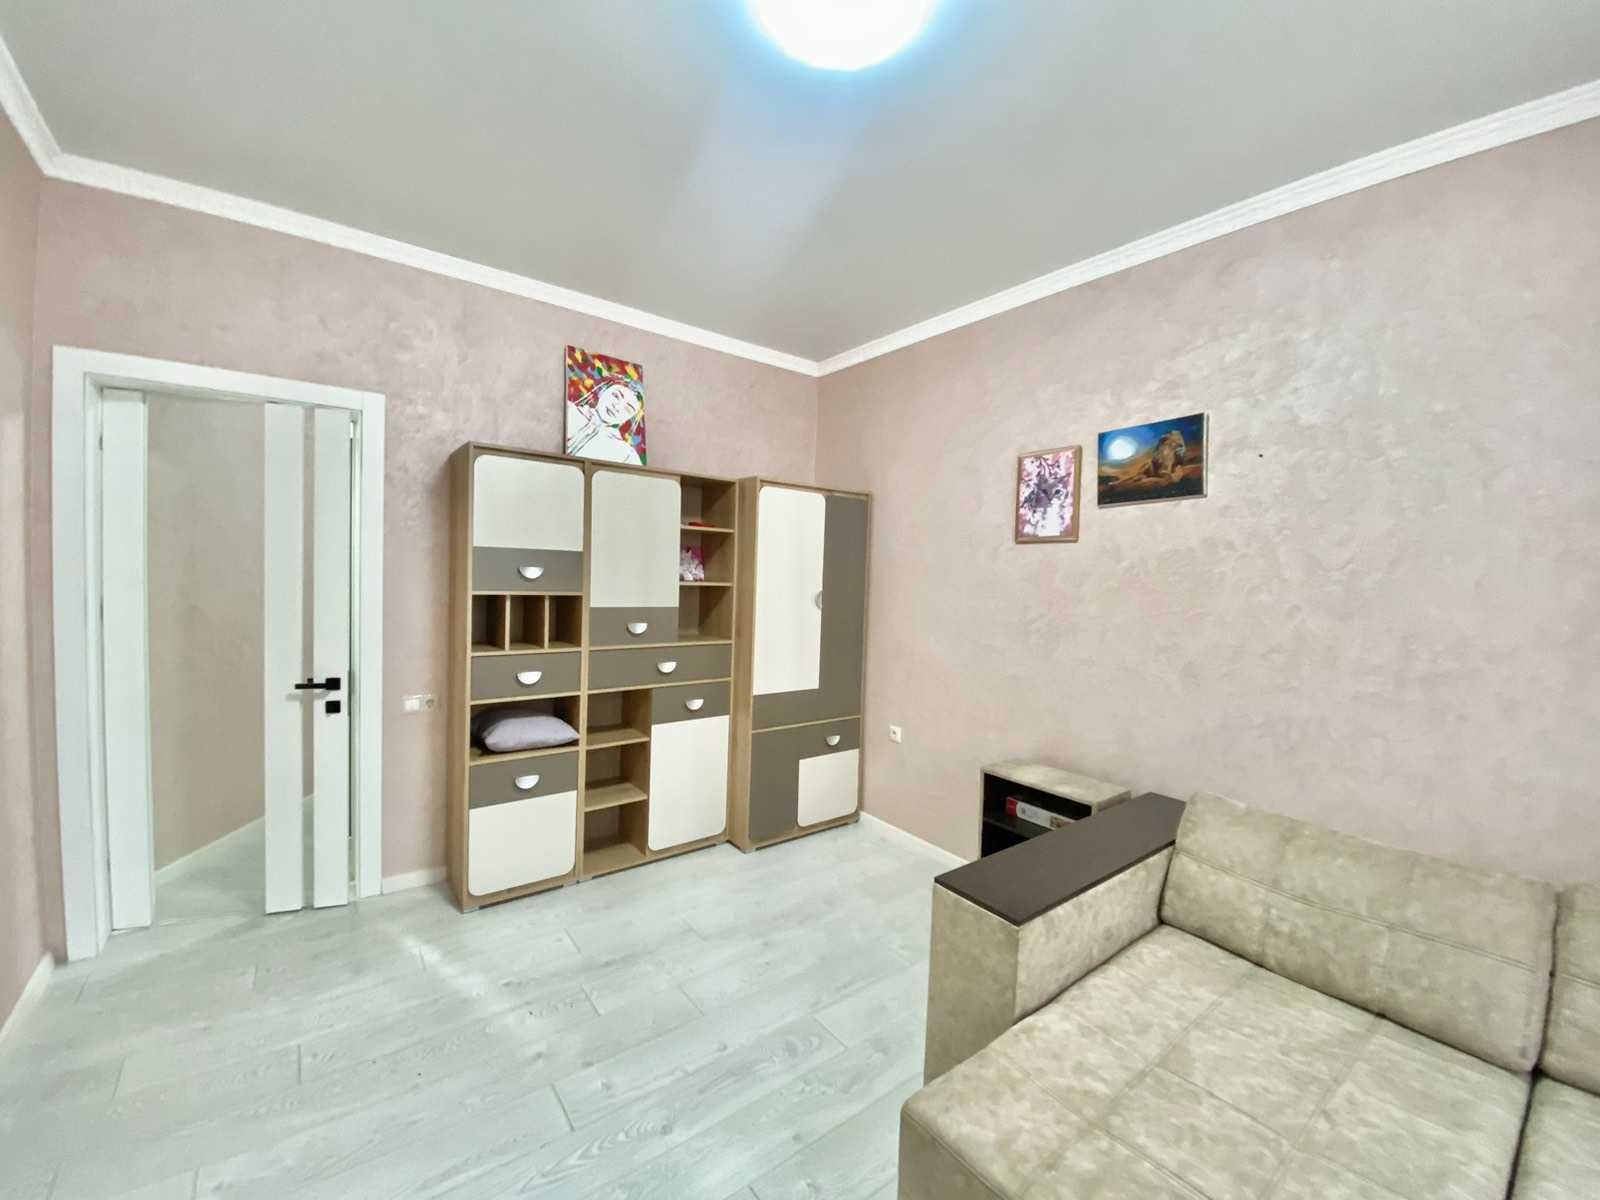 Продам дом в городе Черноморск.